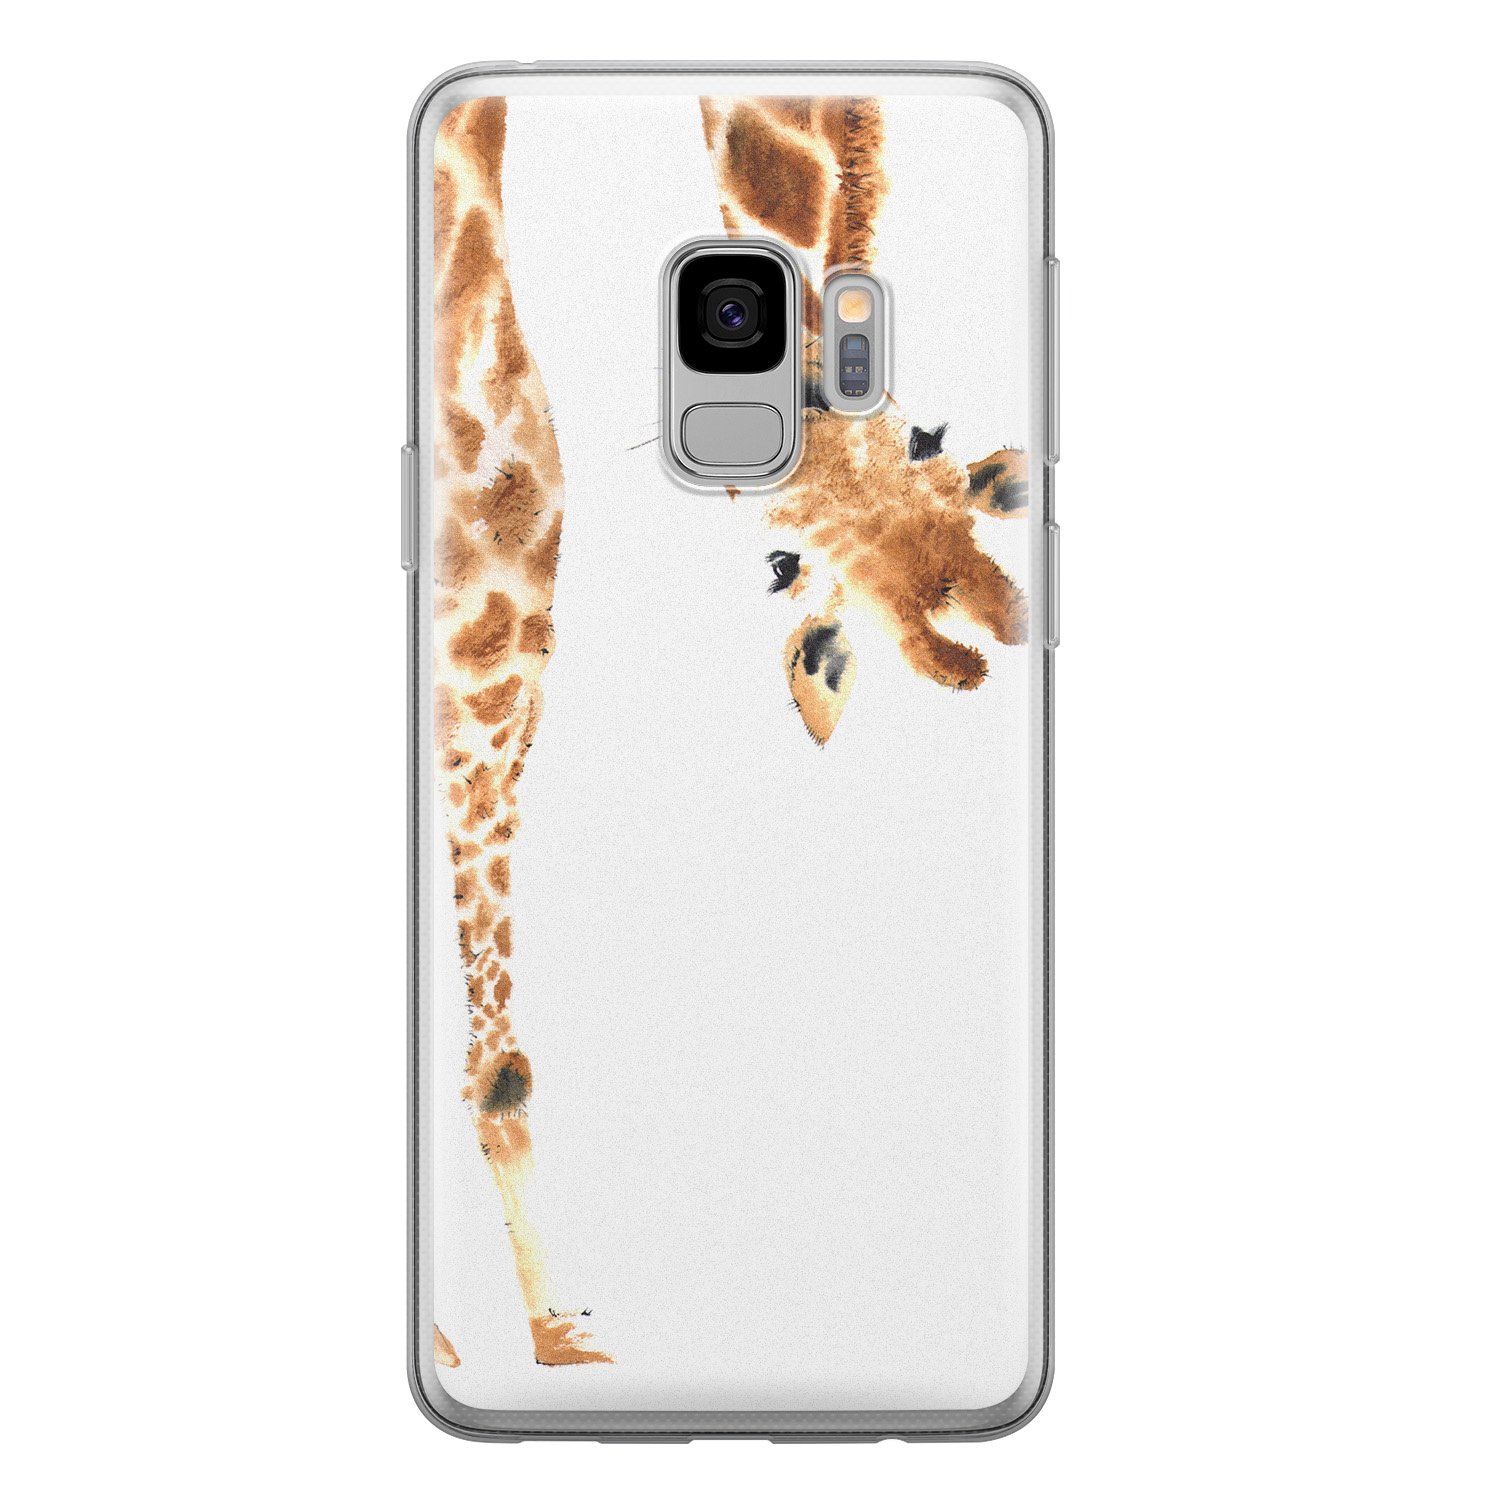 Leuke Telefoonhoesjes Samsung Galaxy S9 siliconen hoesje - Giraffe peekaboo